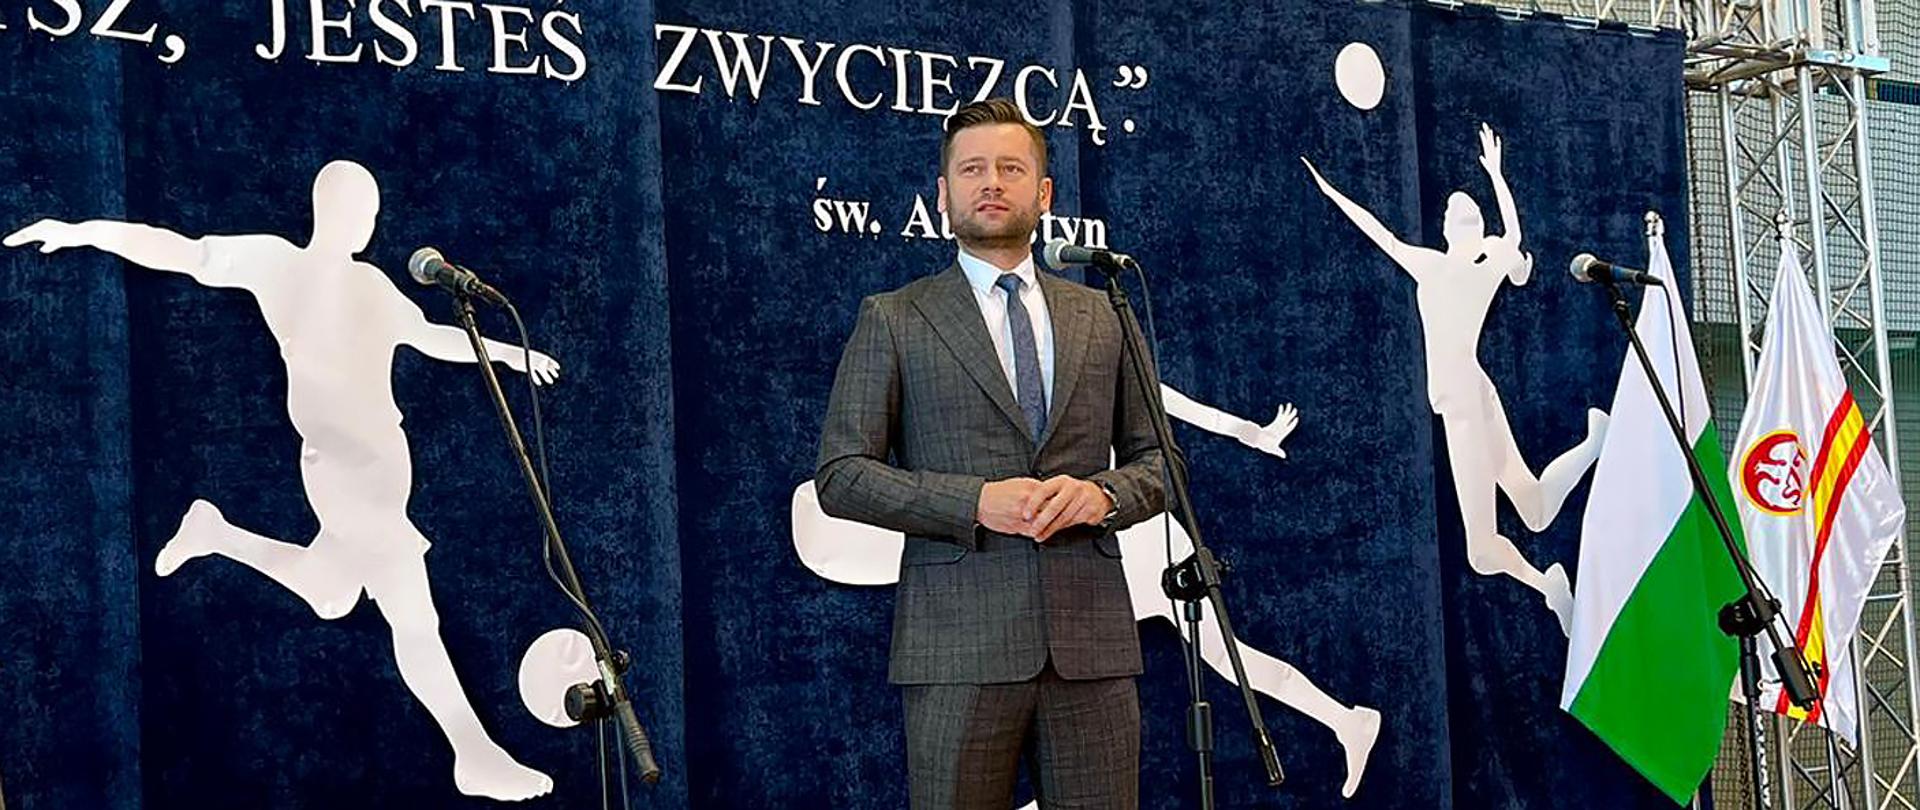 Minister sportu i turystyki Kamil Bortniczuk uczestniczył w uroczystym podsumowaniu współzawodnictwa sportowego uczniów chełmskich szkół. Na zdjęciu minister przemawia do mikrofonu, w tle napis "Jesteś zwycięzcą"